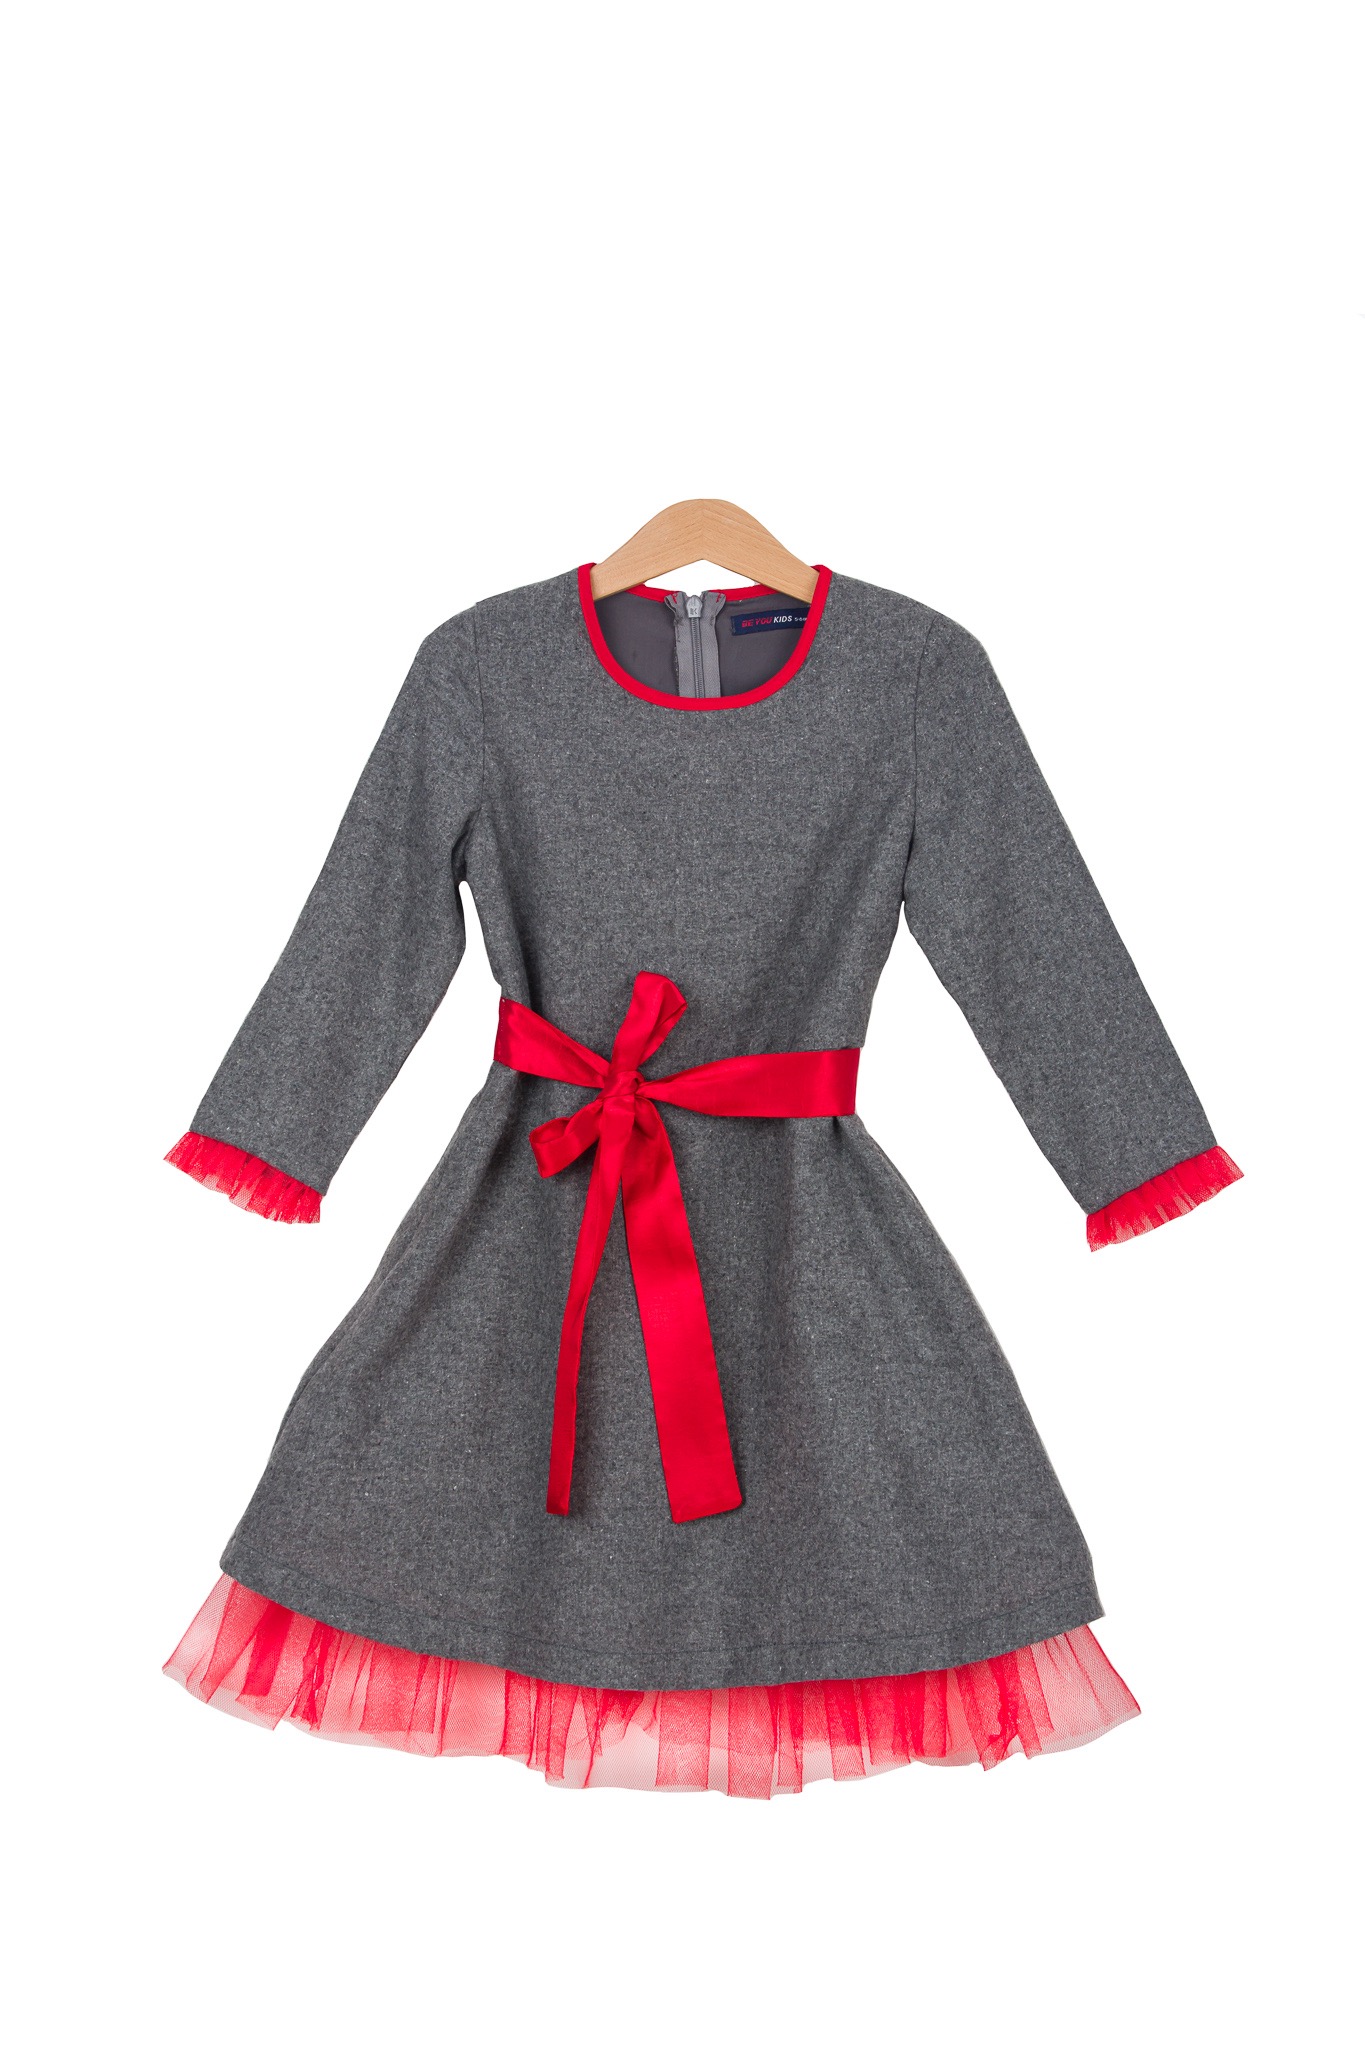 Rochie stofă toamnă/iarnă cu tul roșu la mâneci și